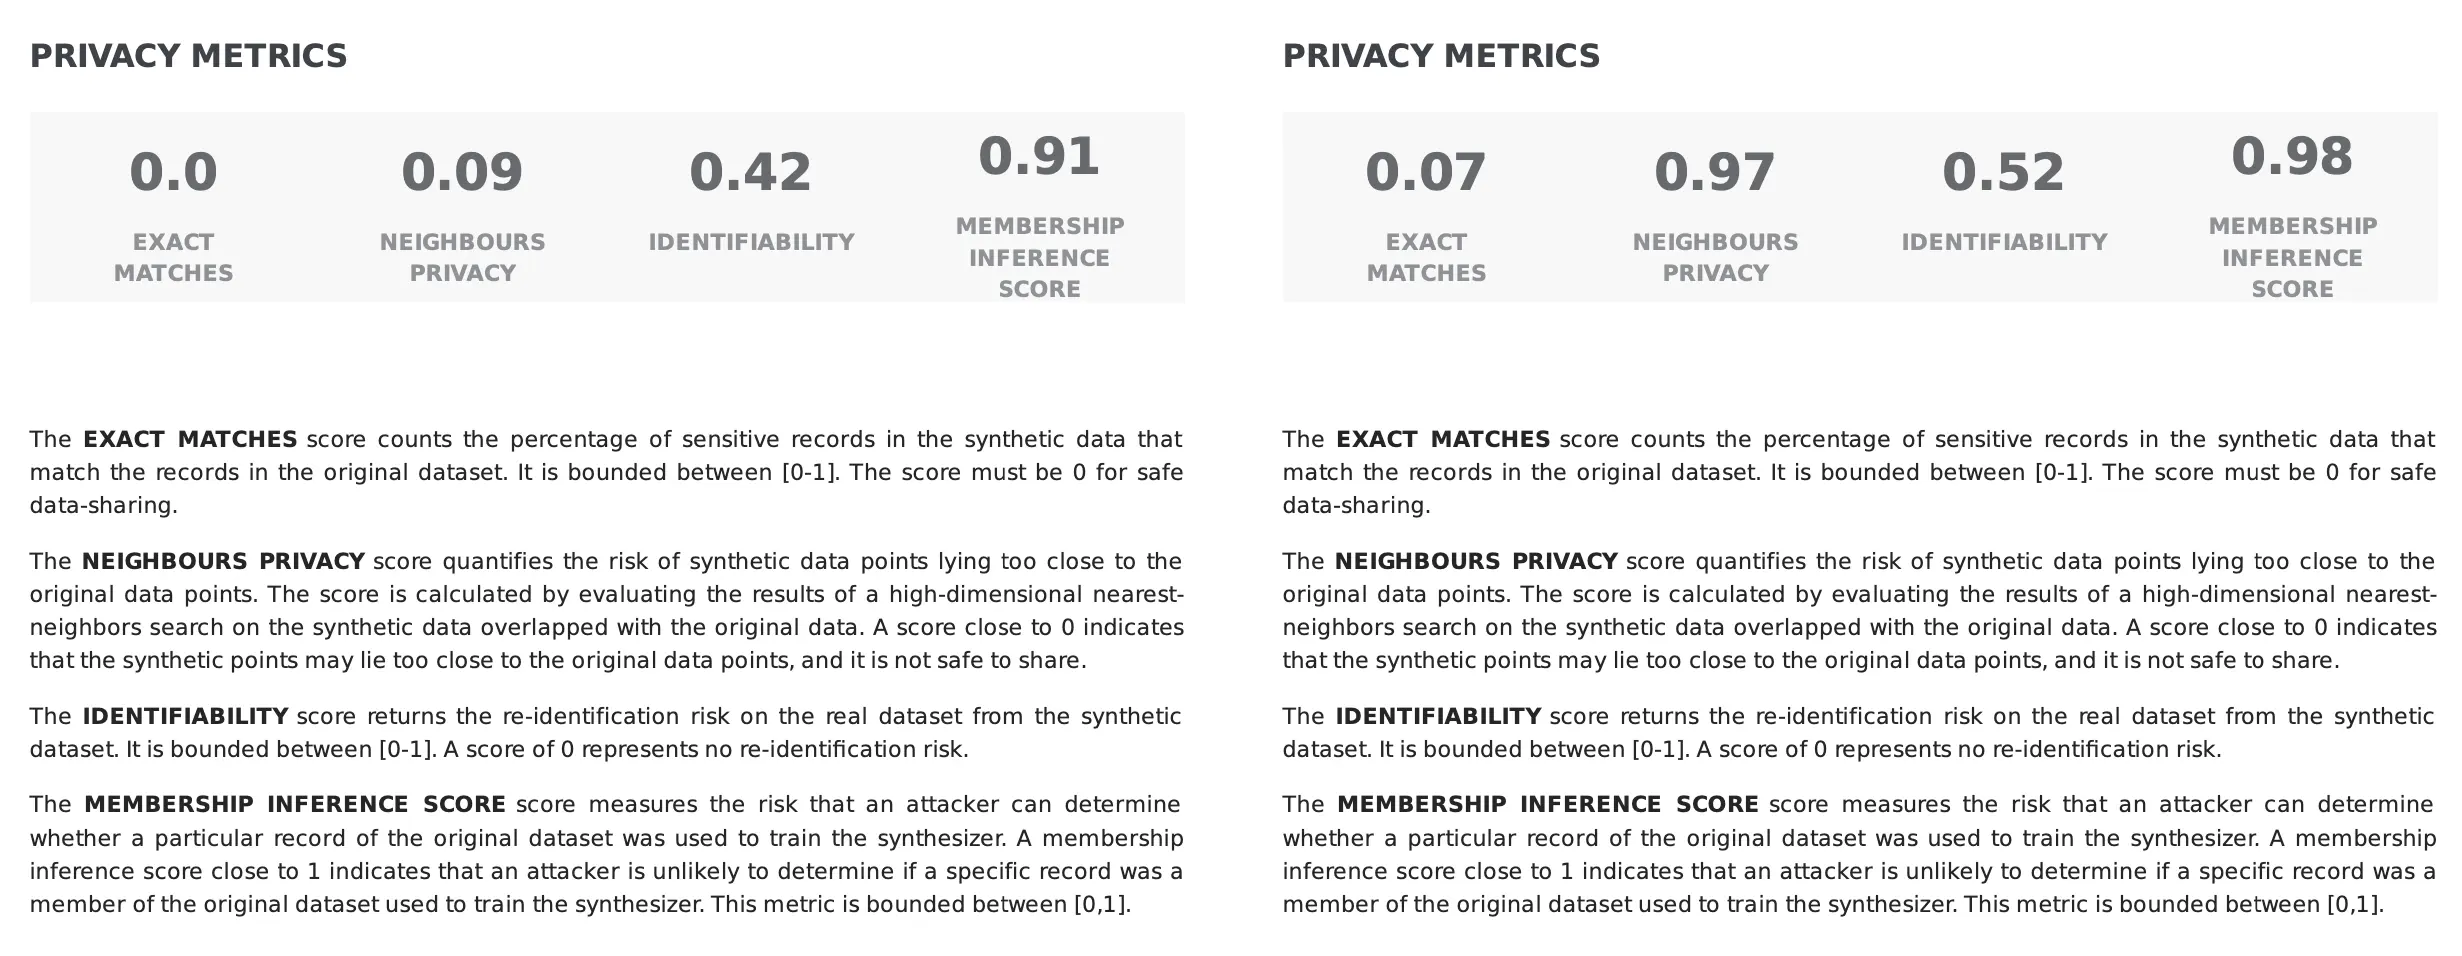 privacy-metrics-report